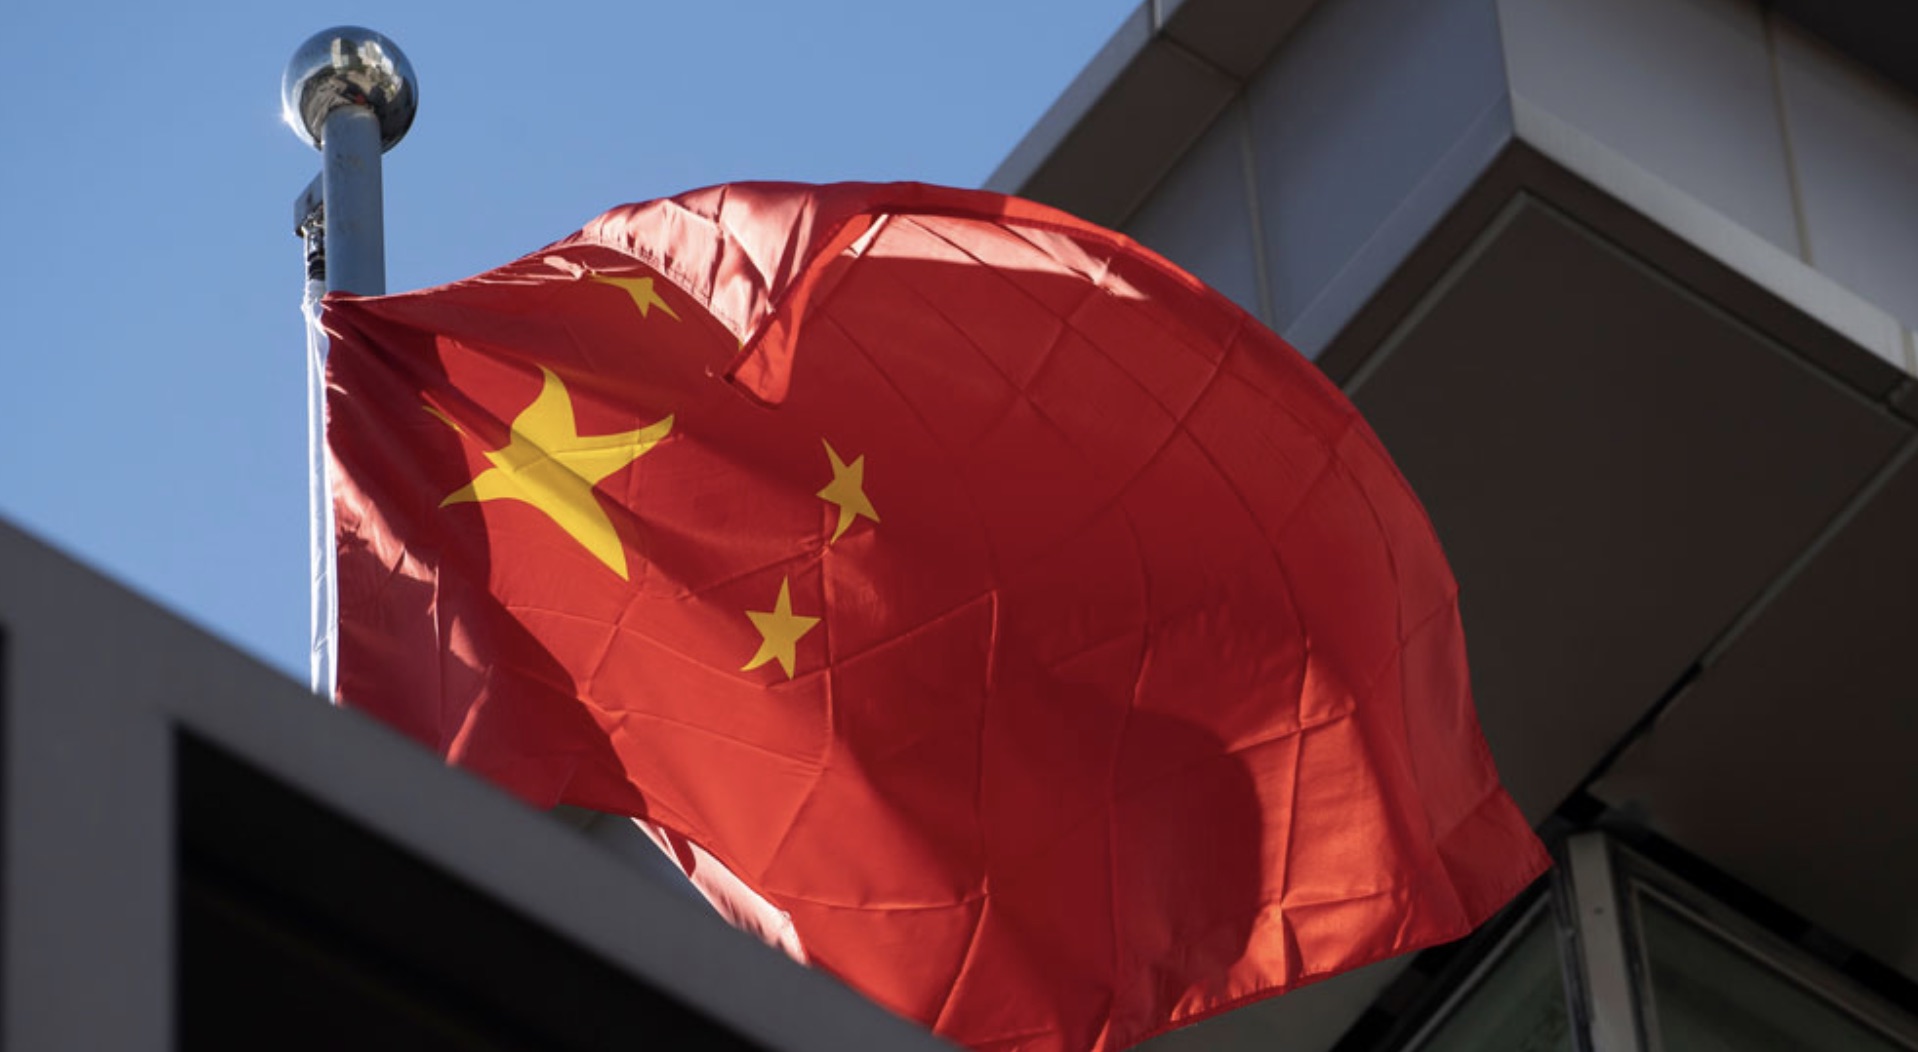 China, Bandera china, Espionaje, Hong Kong, Taiwan, Propaganda china, Pekín